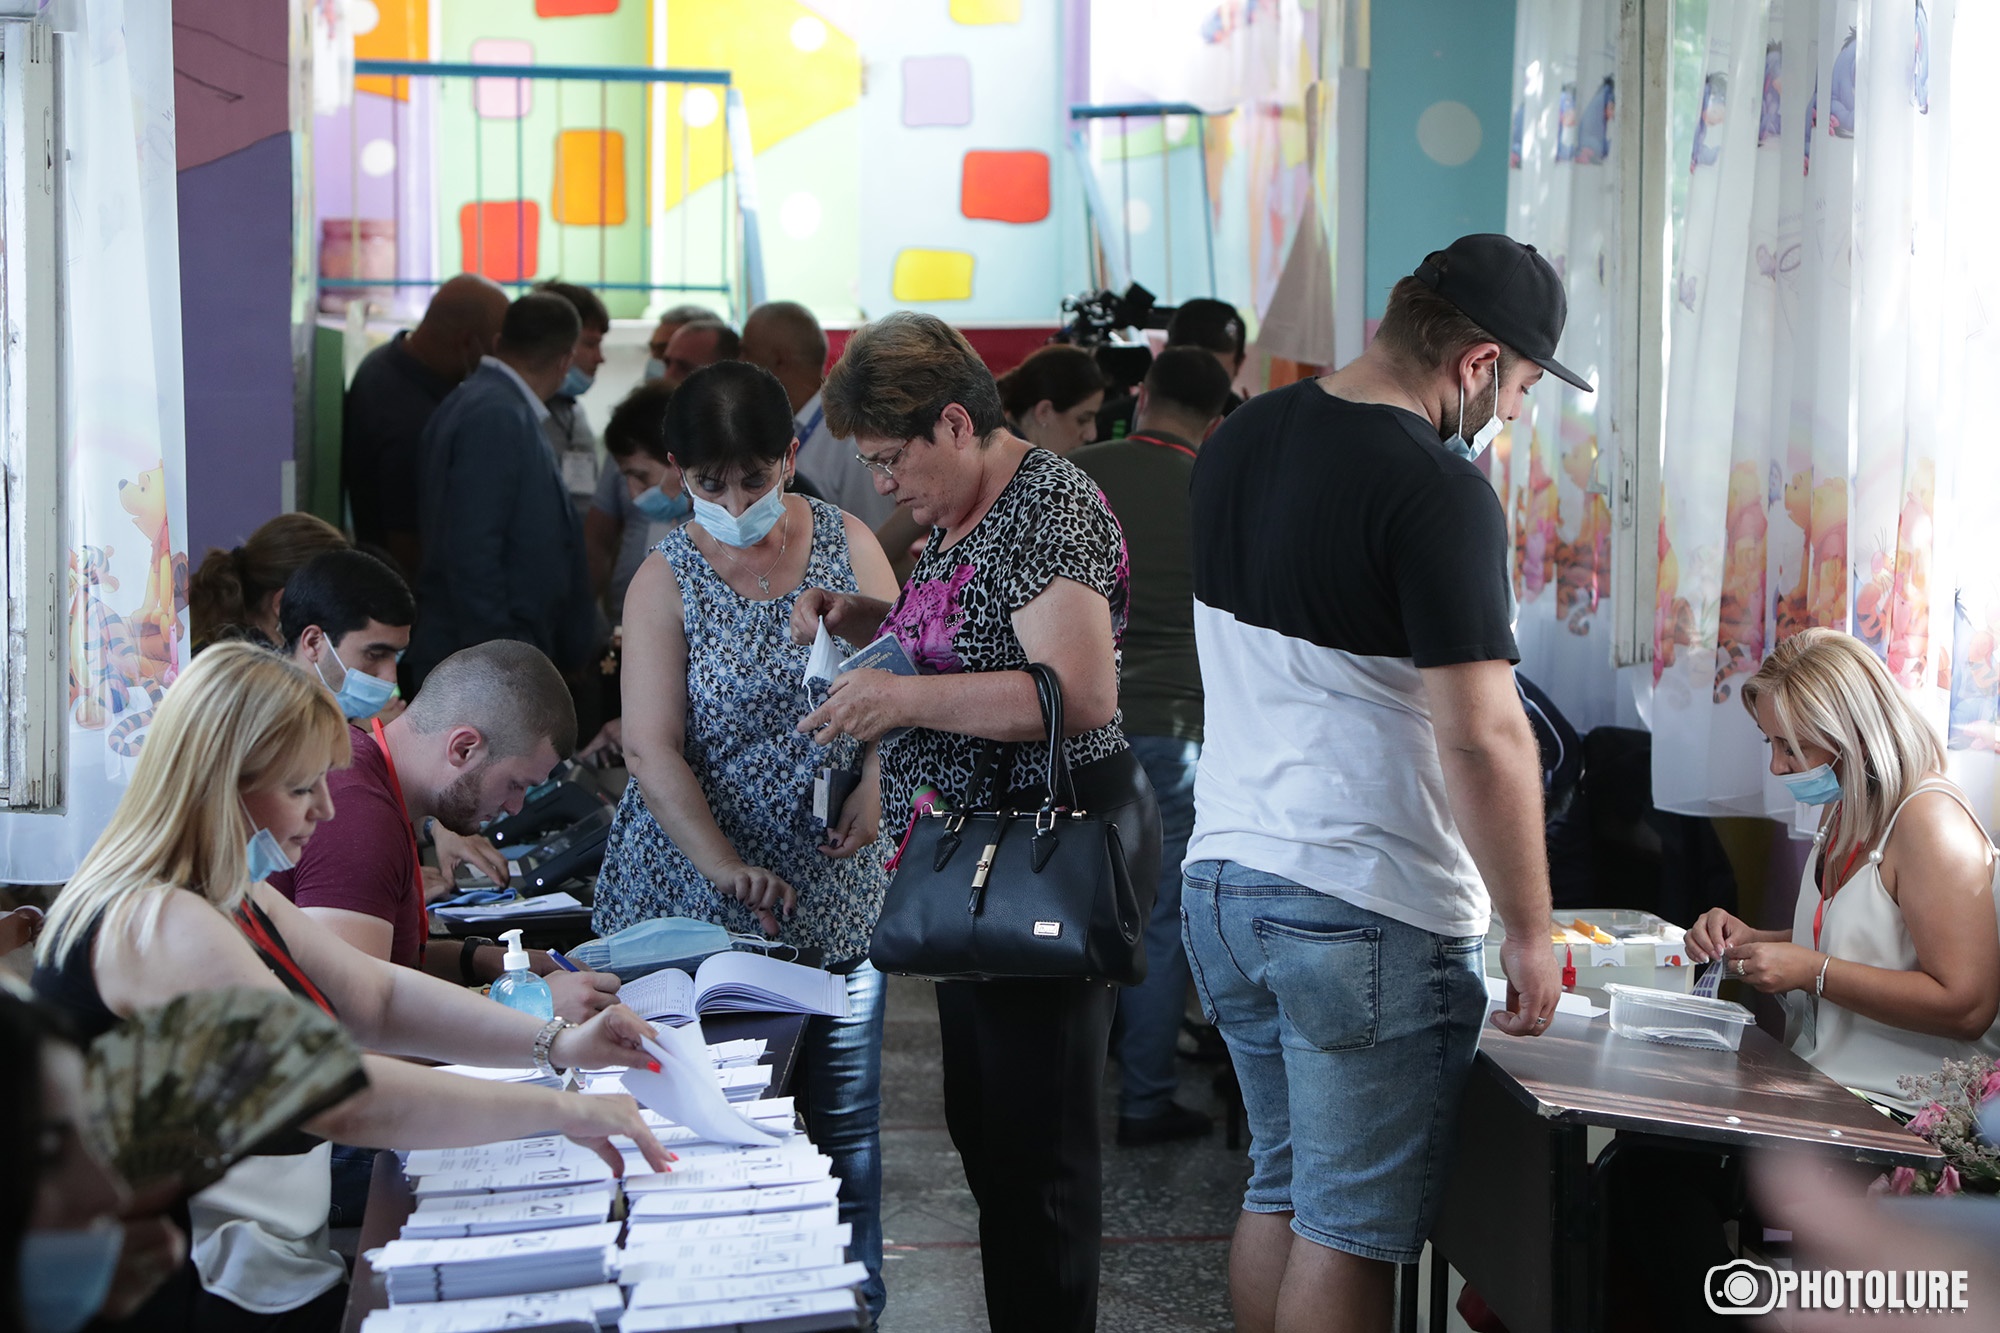 Явка на выборы в Армении по состоянию на 14:00 составила 26,82%